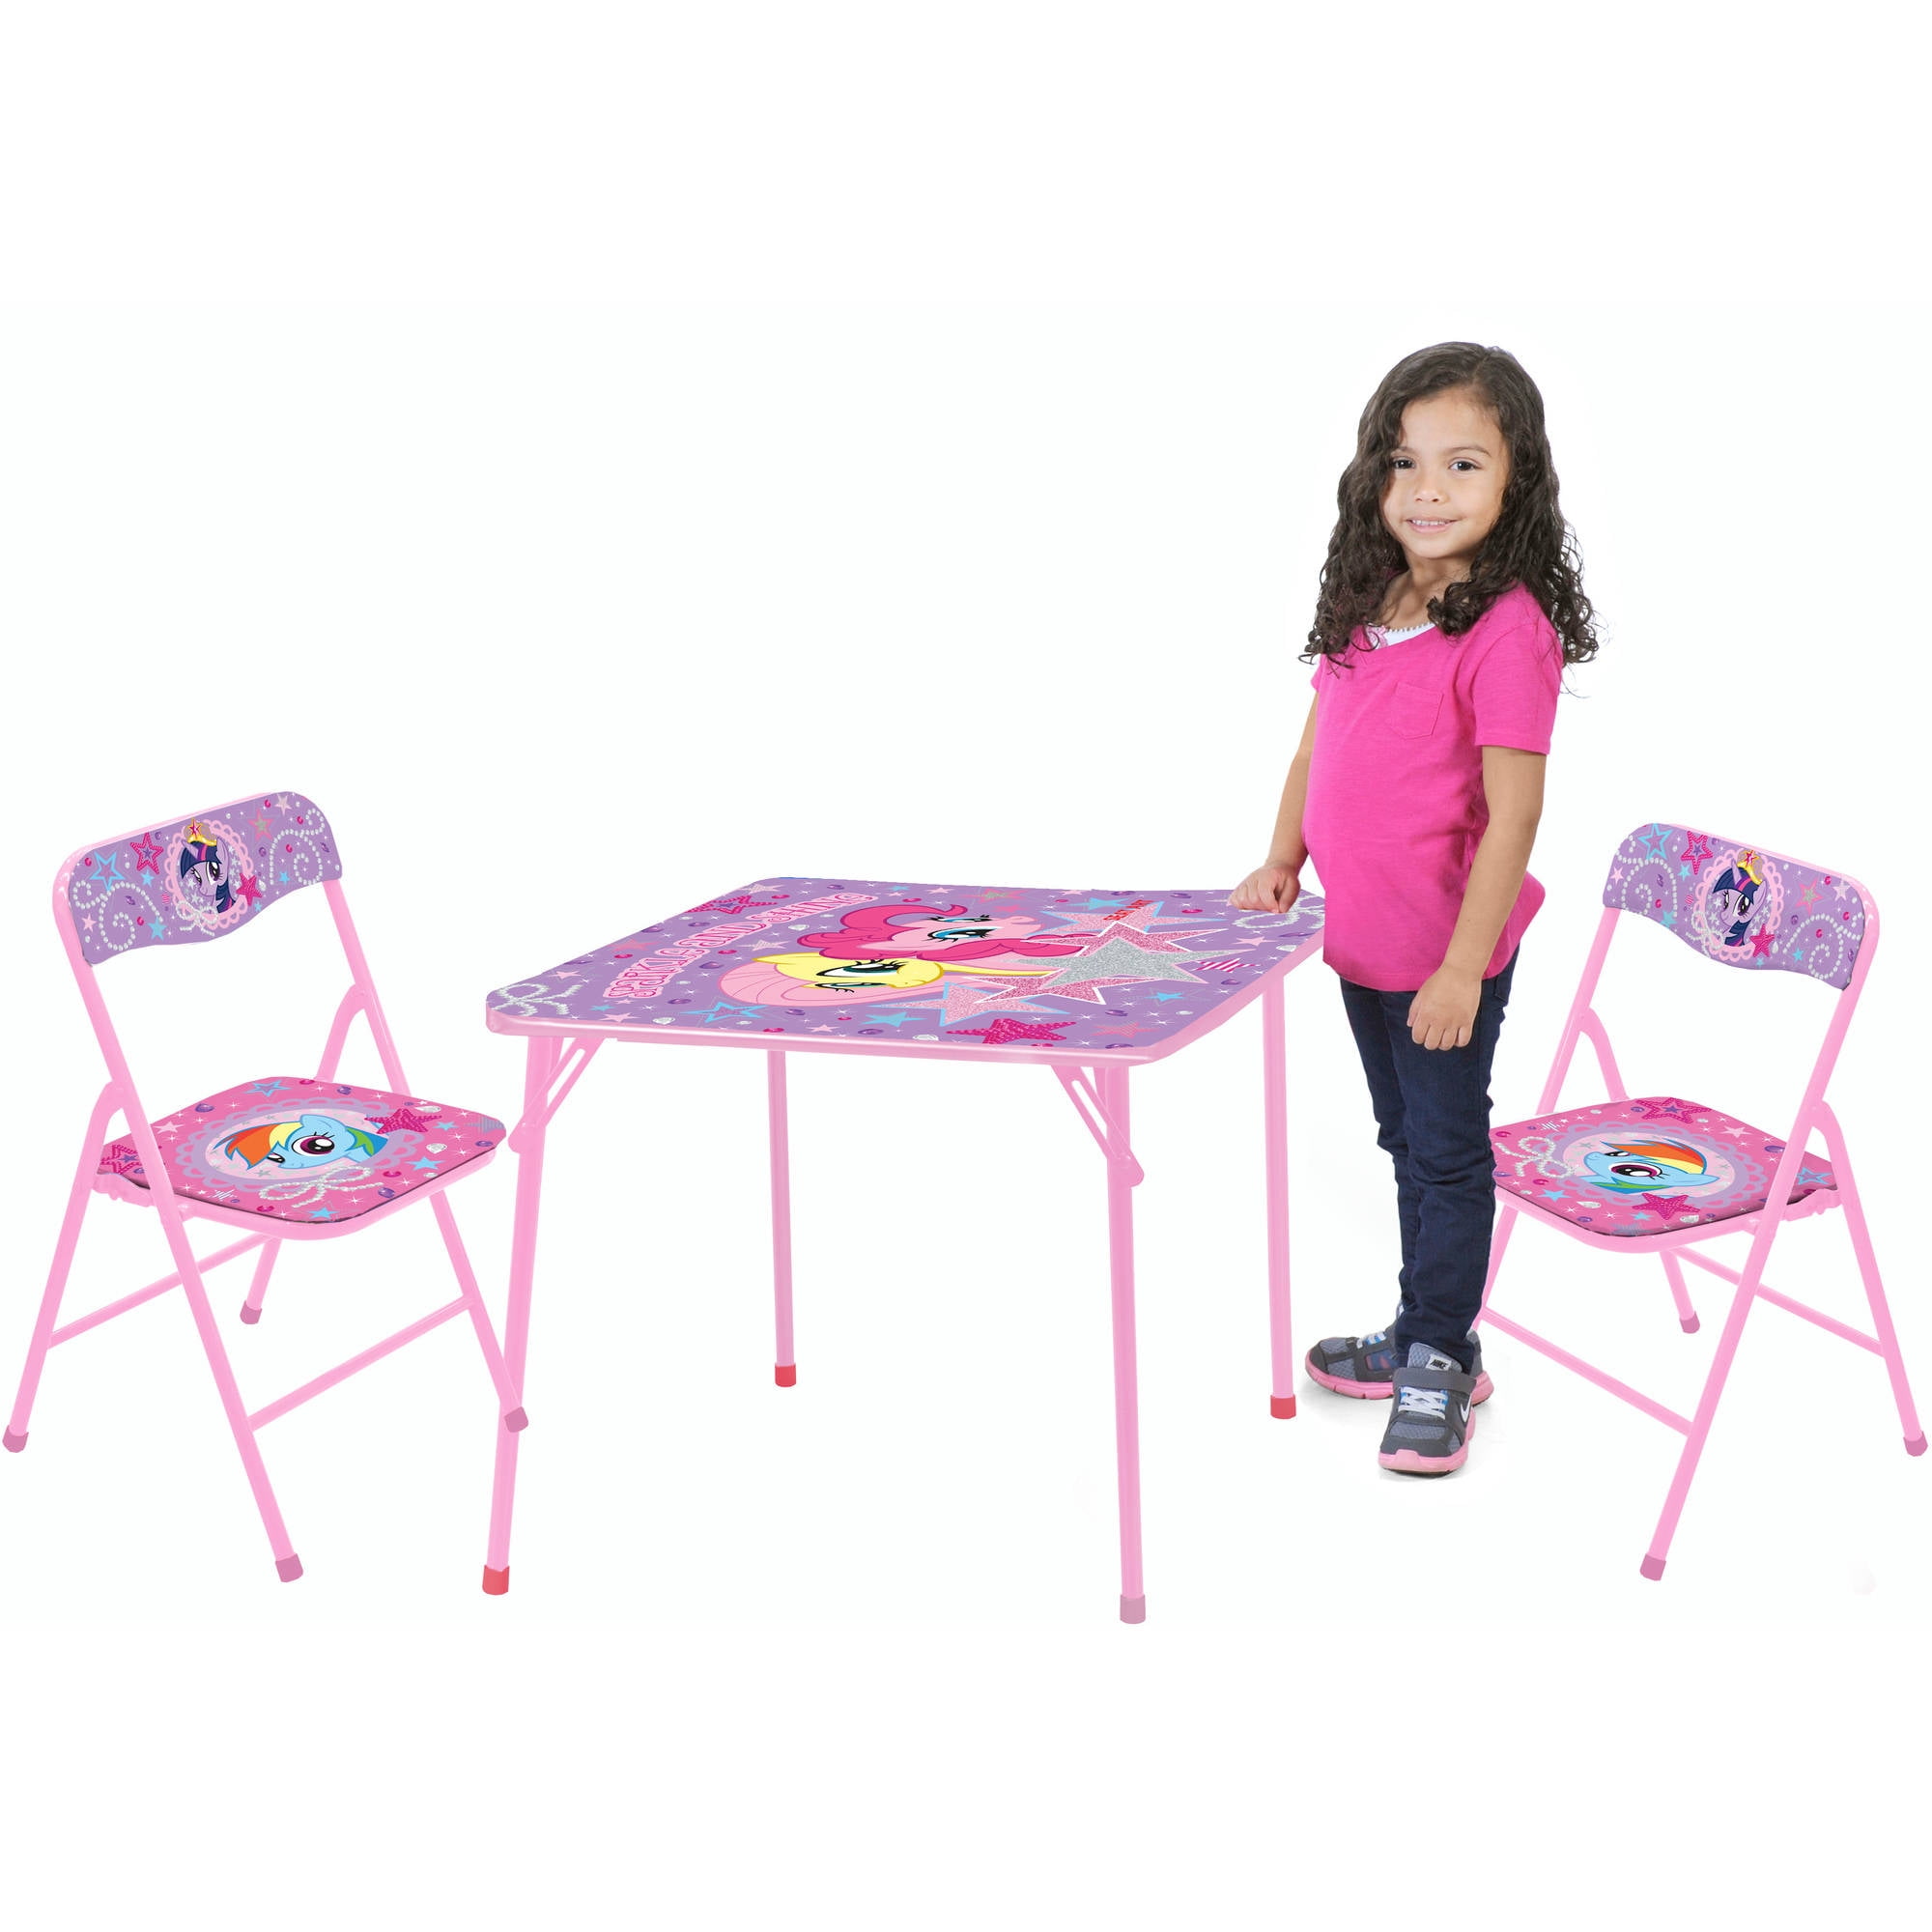 little kids table